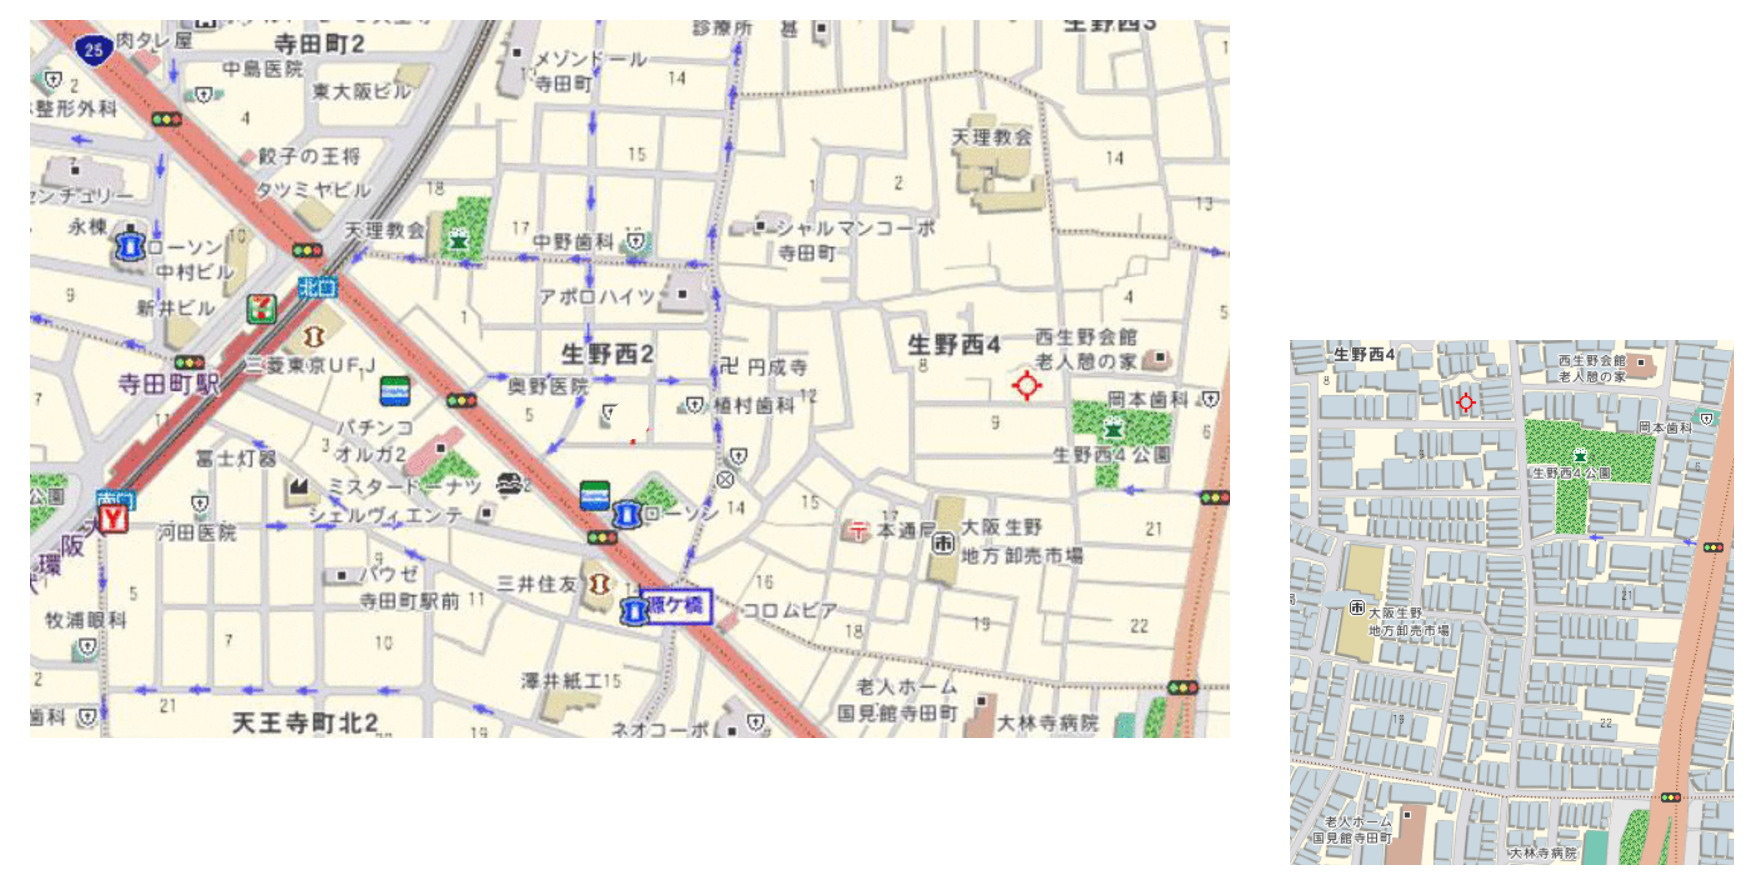 ジョイフル地図.jpg